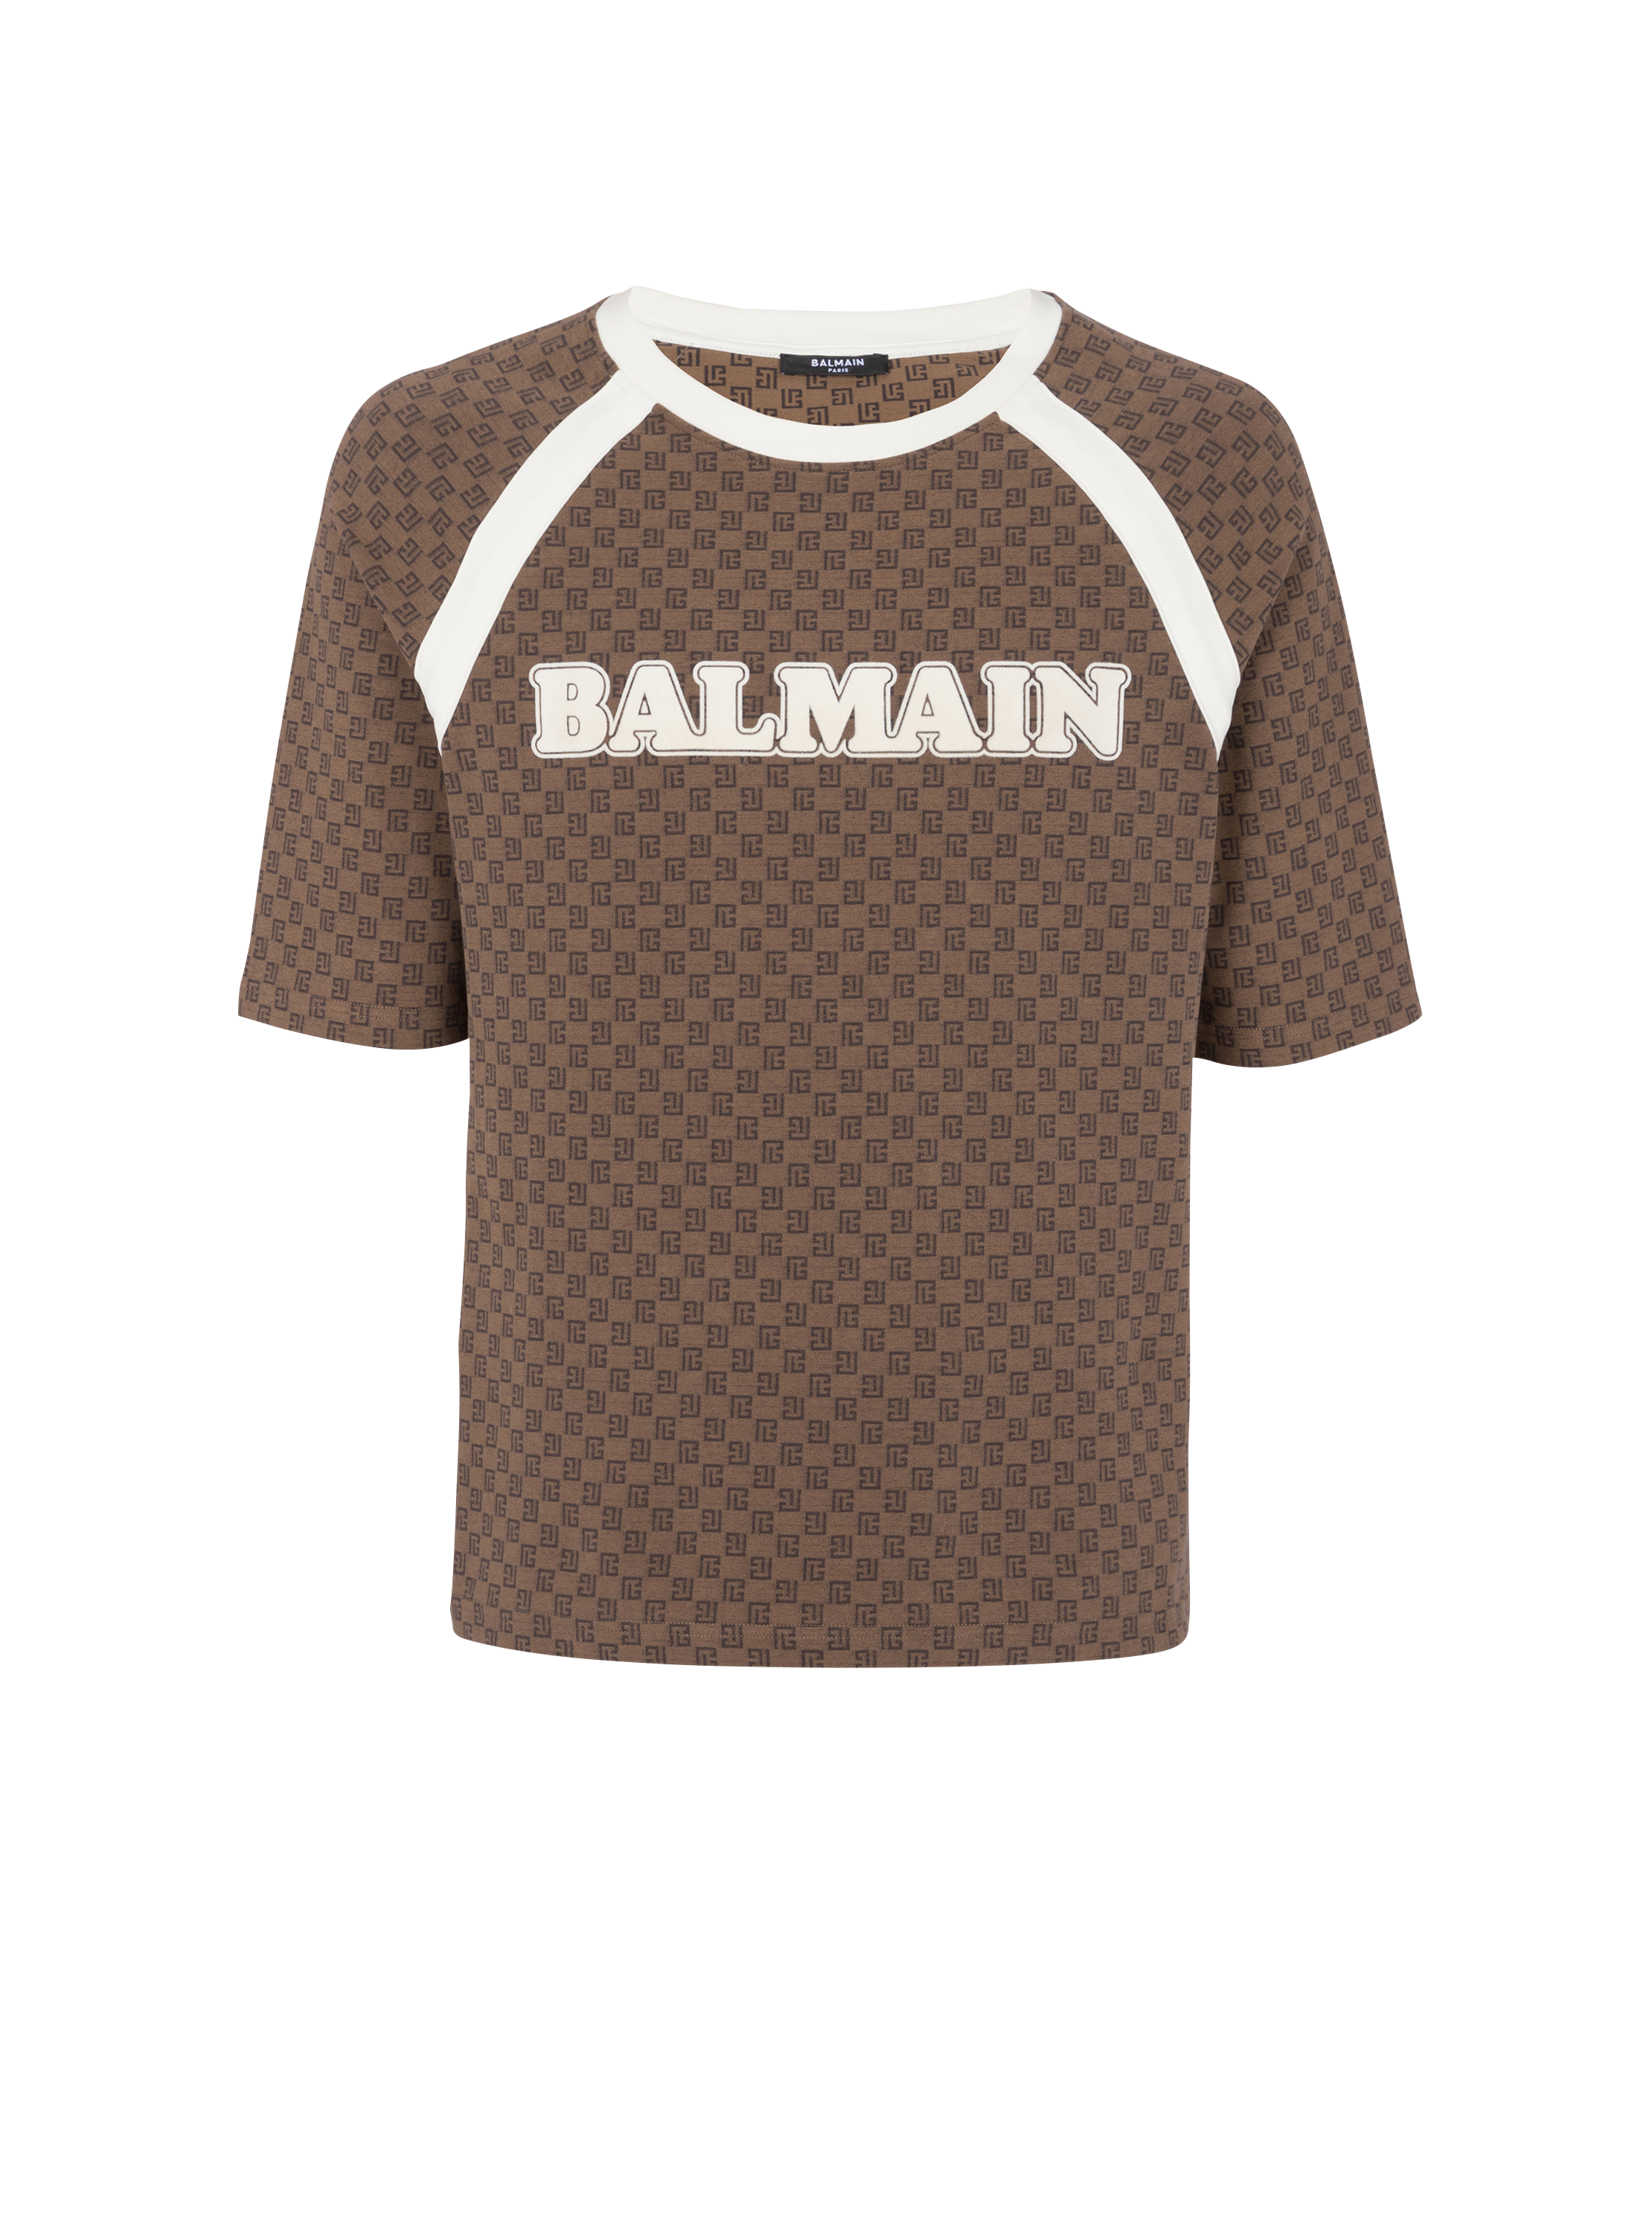 Camiseta Rétro con monograma pequeño, marrón, hi-res